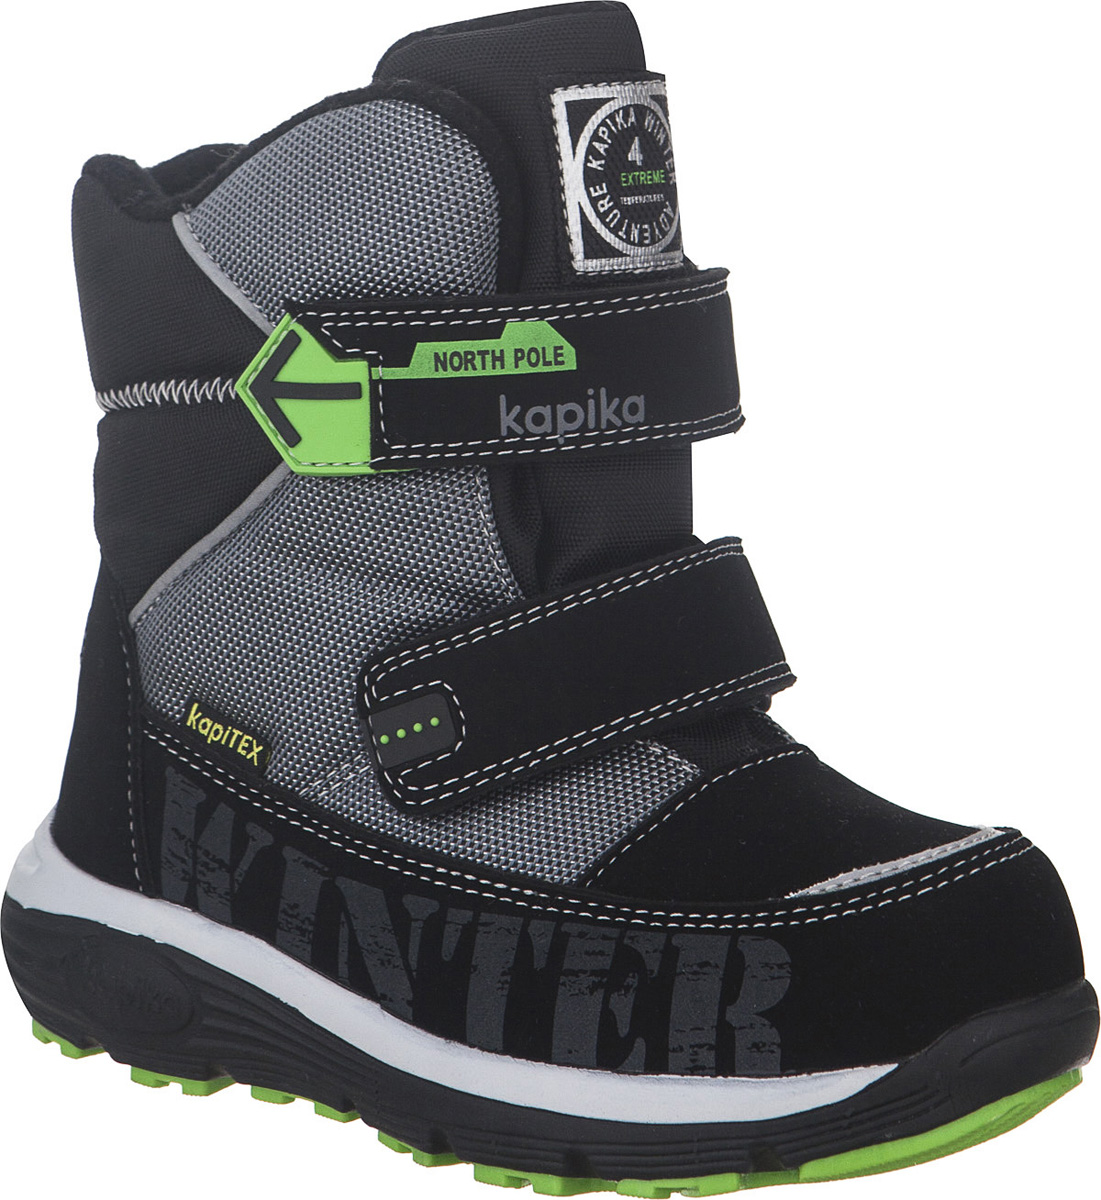 Ботинки для мальчика Kapika KapiTEX, цвет: черный, серый. 42247-2. Размер 32